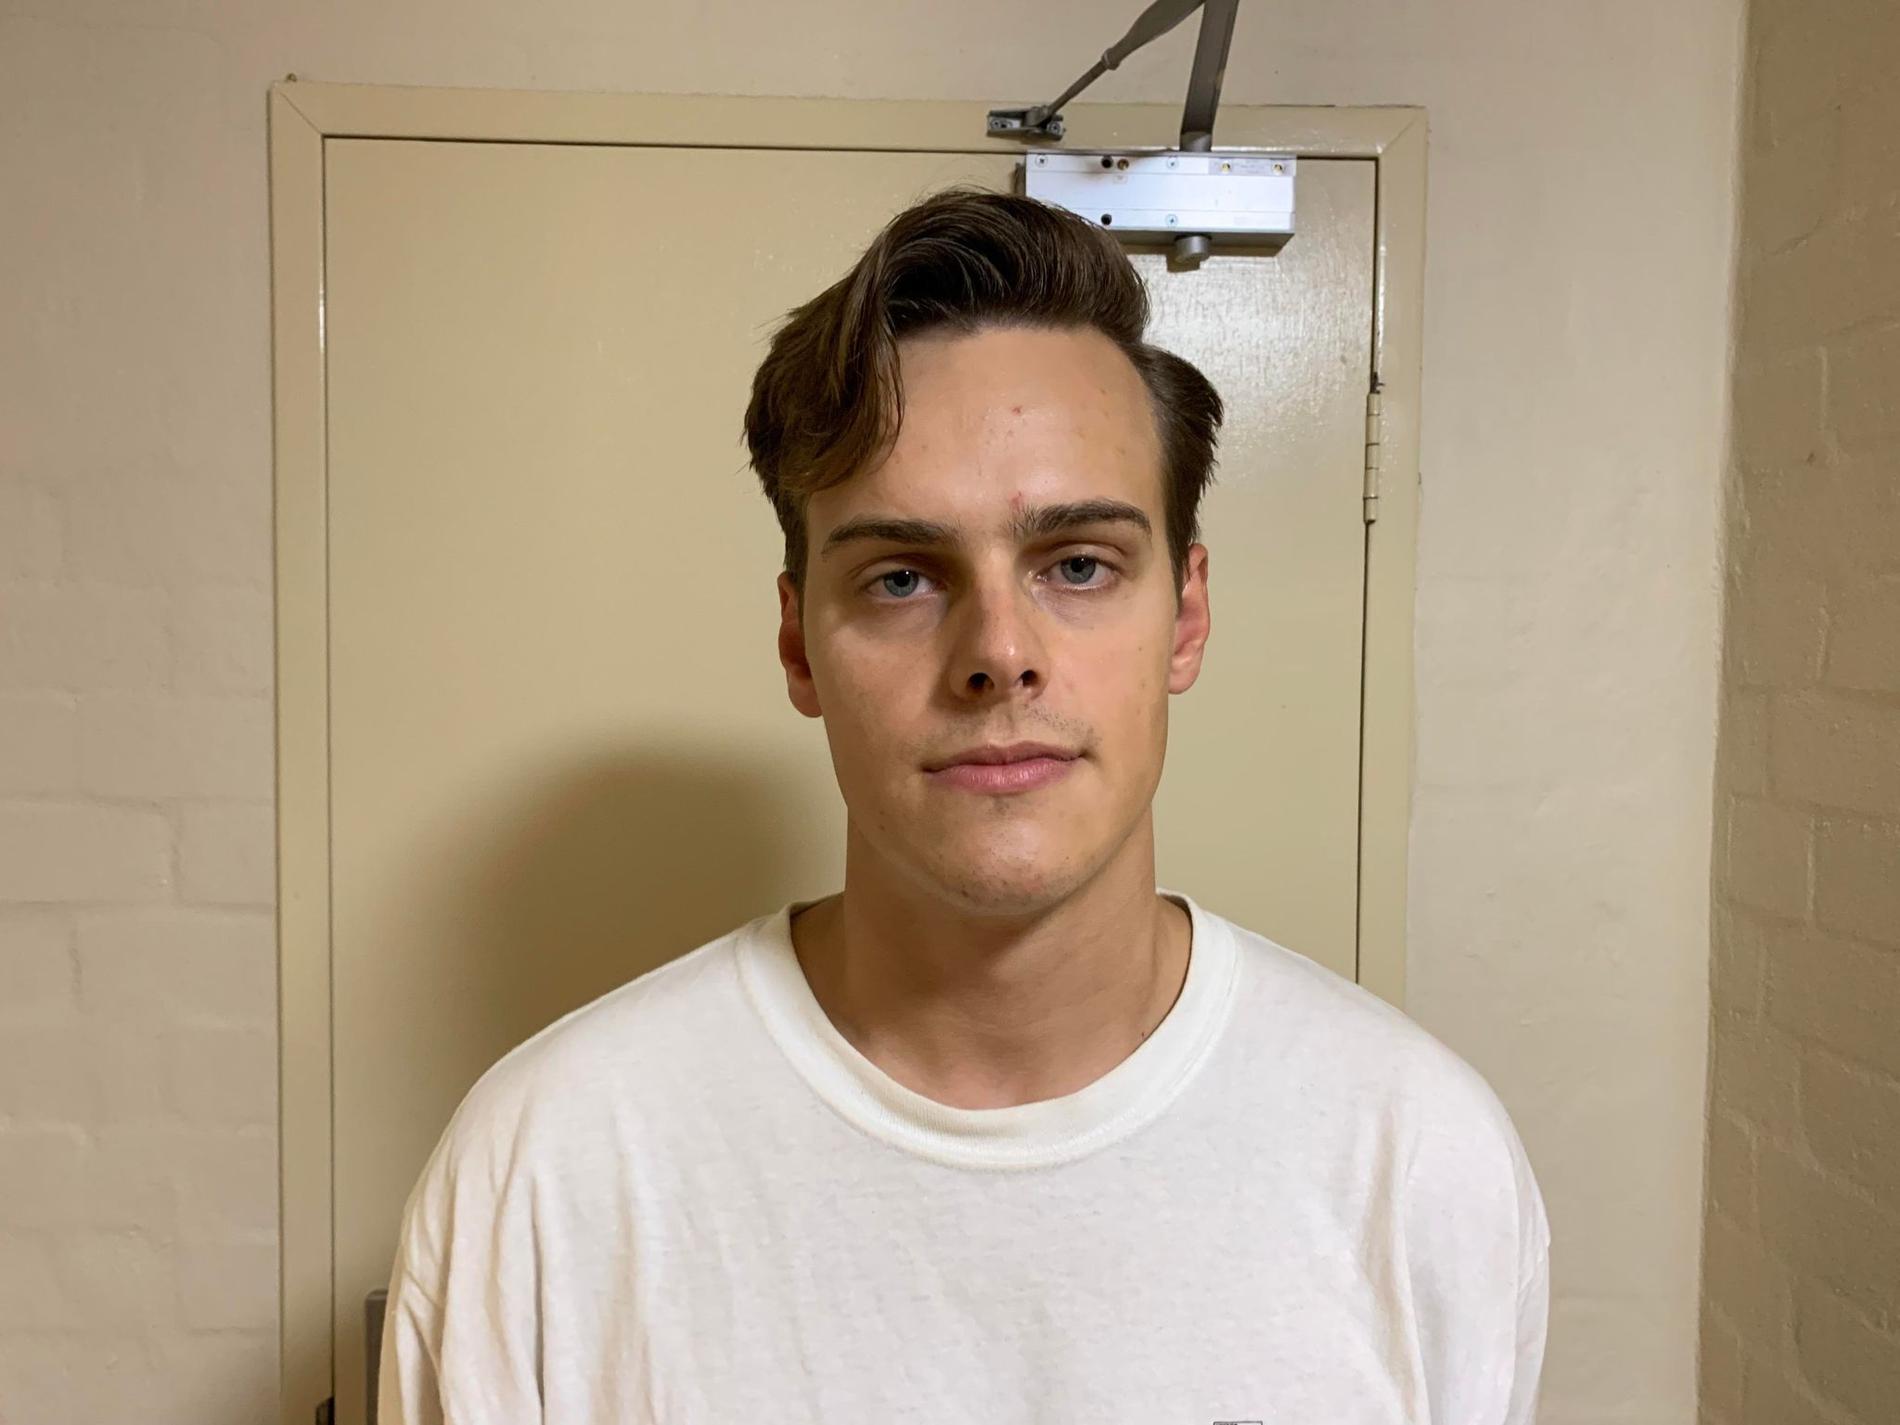 Svenske studenten svenske Jakob Hasselqvist Haglund, 24, bor söder om Sydney. De senaste veckorna har mångmiljonstaden och närliggande områden drabbats av extrema skyfall och de kommande dagarna väntas vädret bli värre. 